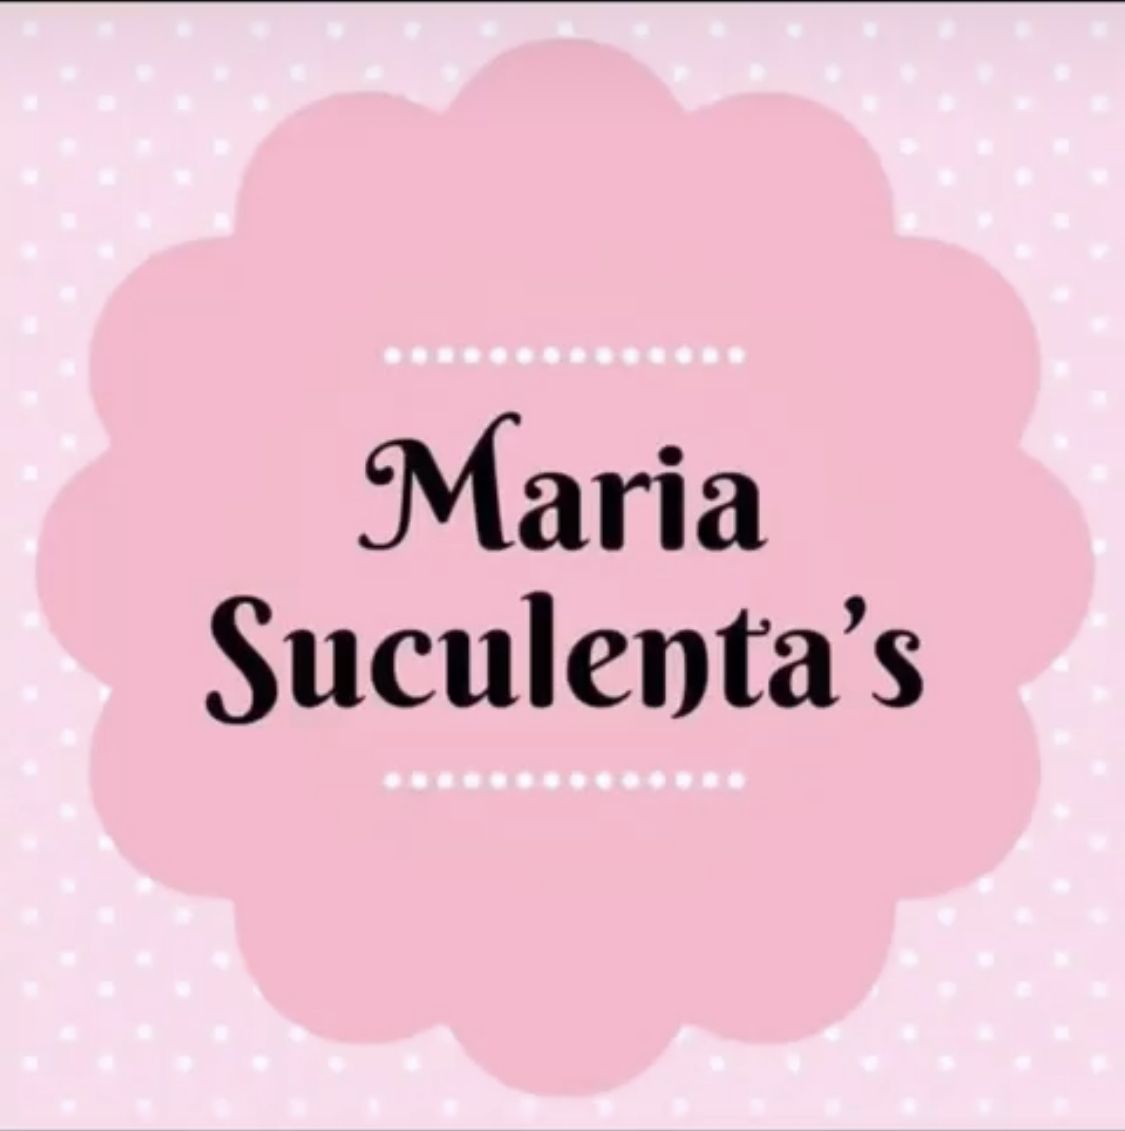 Maria Suculentas